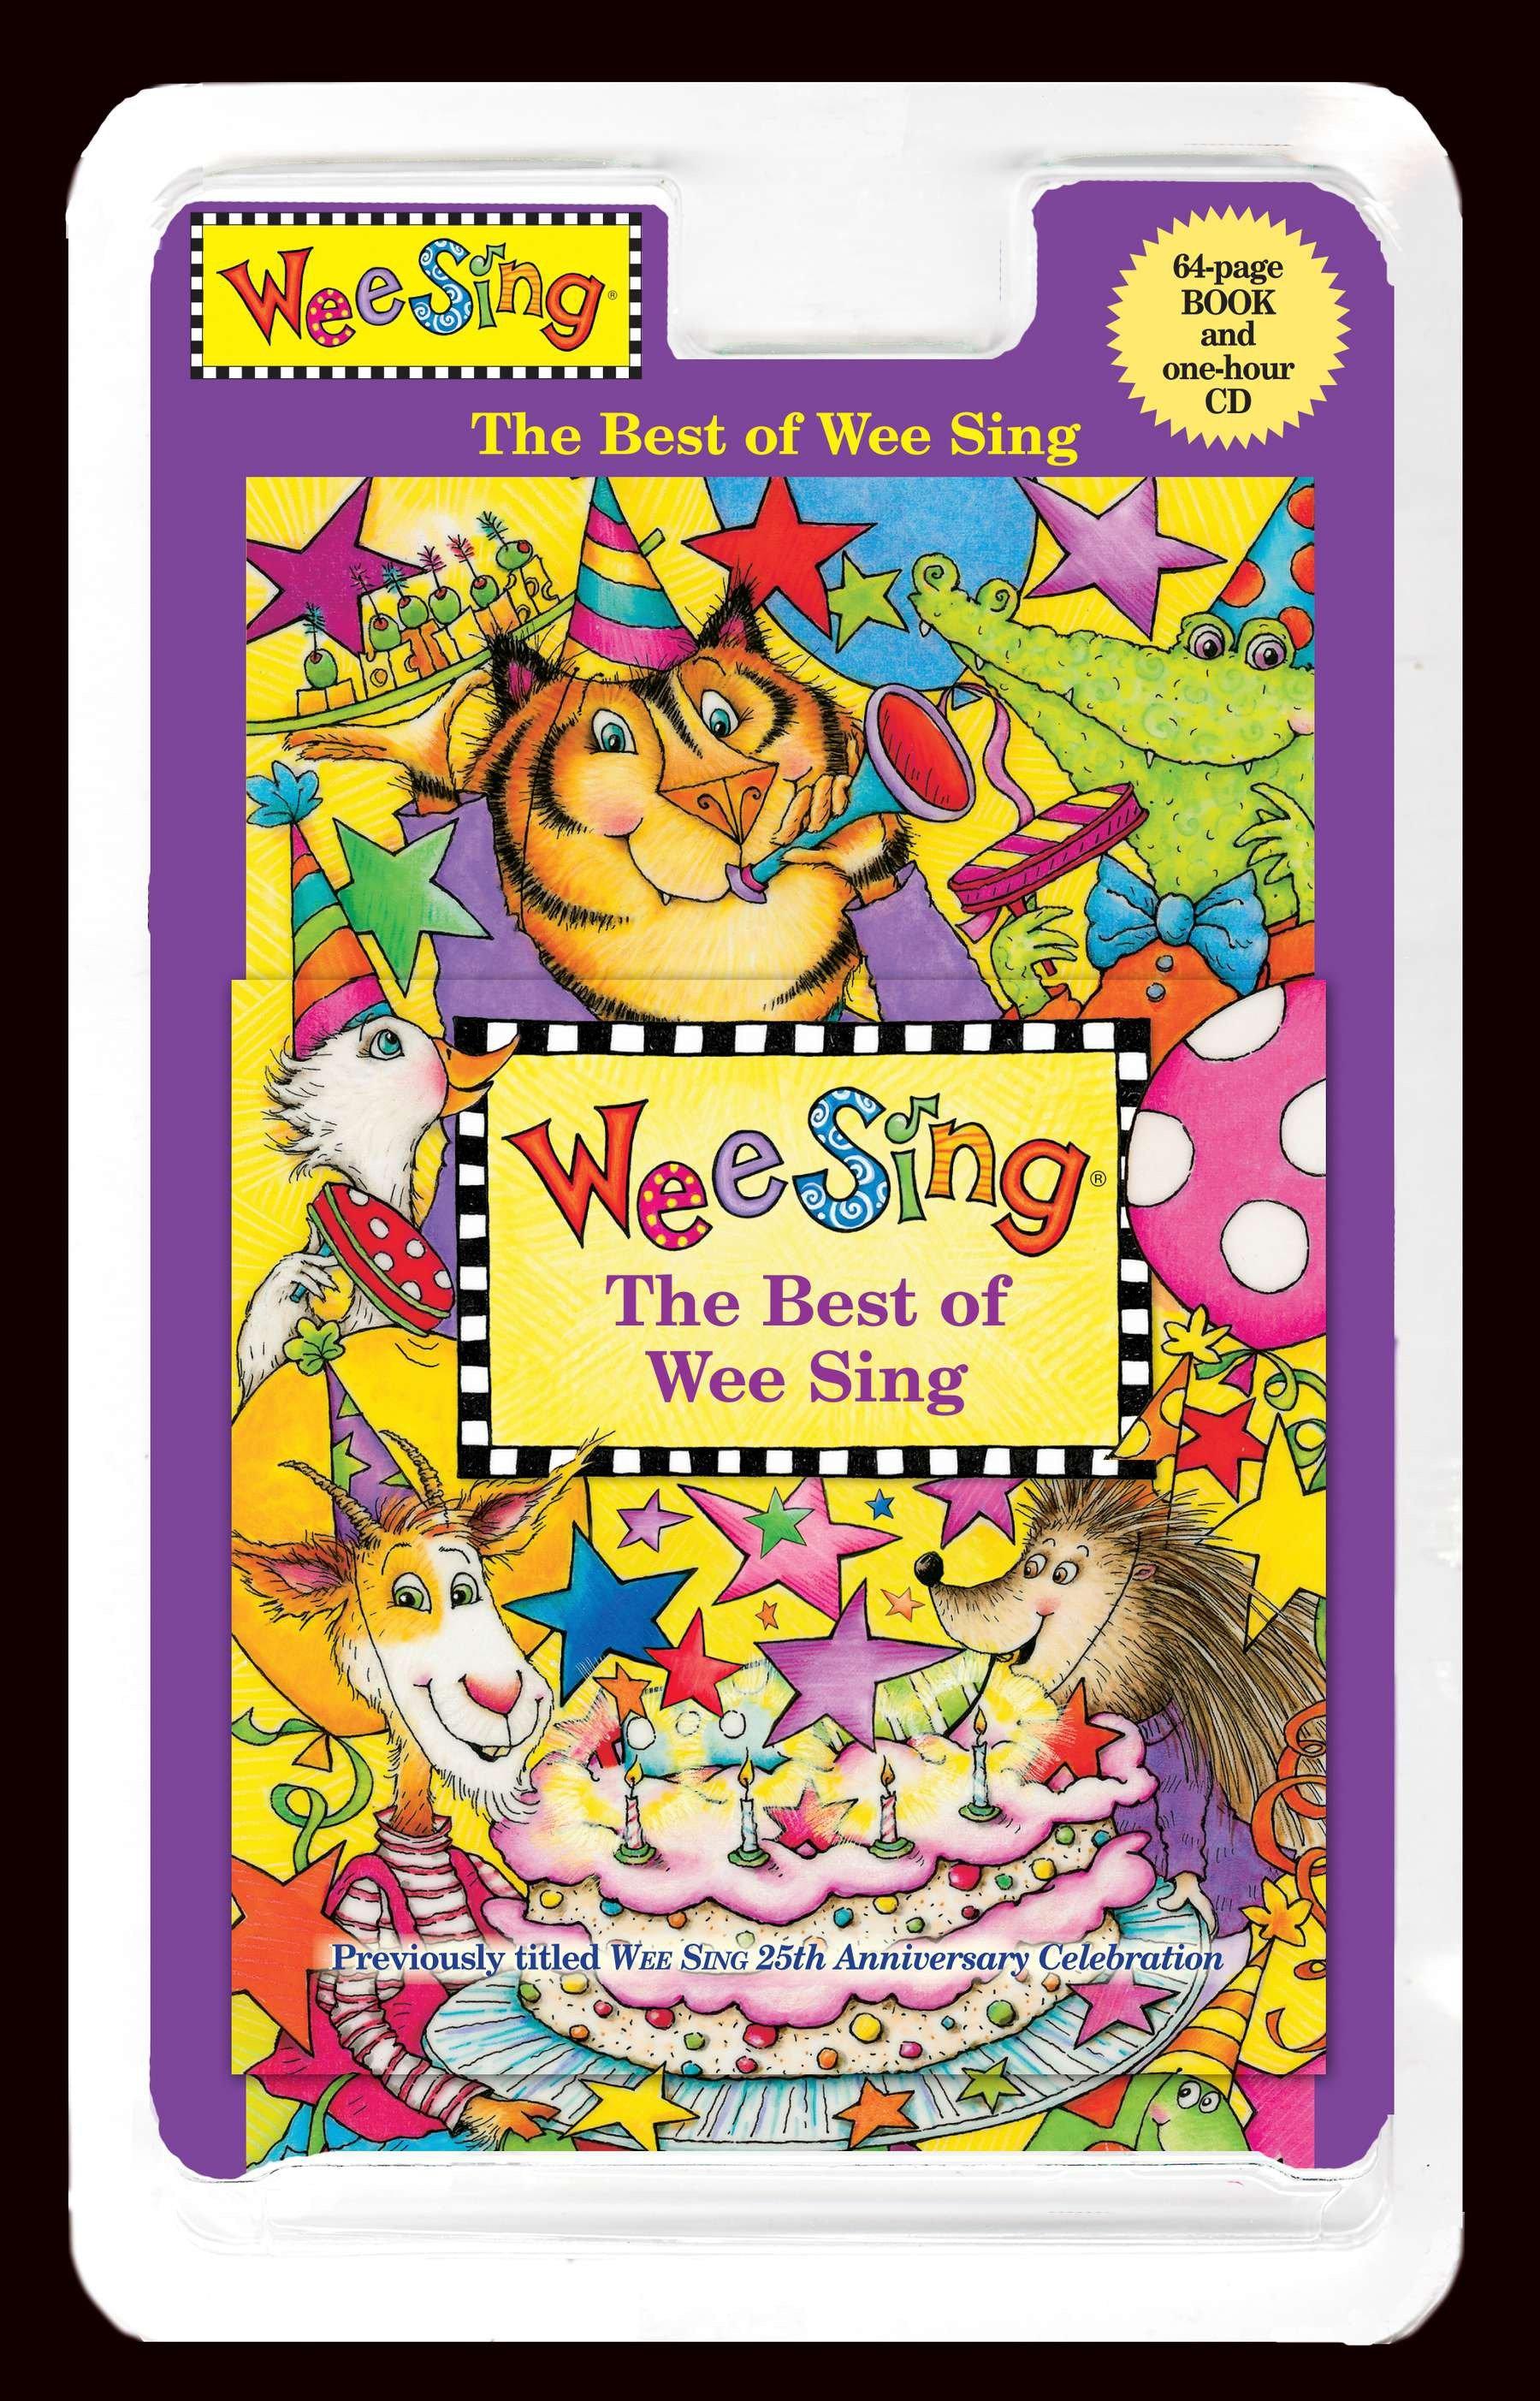 The Best of Wee Sing. Book + CD | Pamela Conn Beall (u. a.) | Taschenbuch | 64 S. | Englisch | 2011 | Penguin LLC US | EAN 9780843121841 - Beall, Pamela Conn